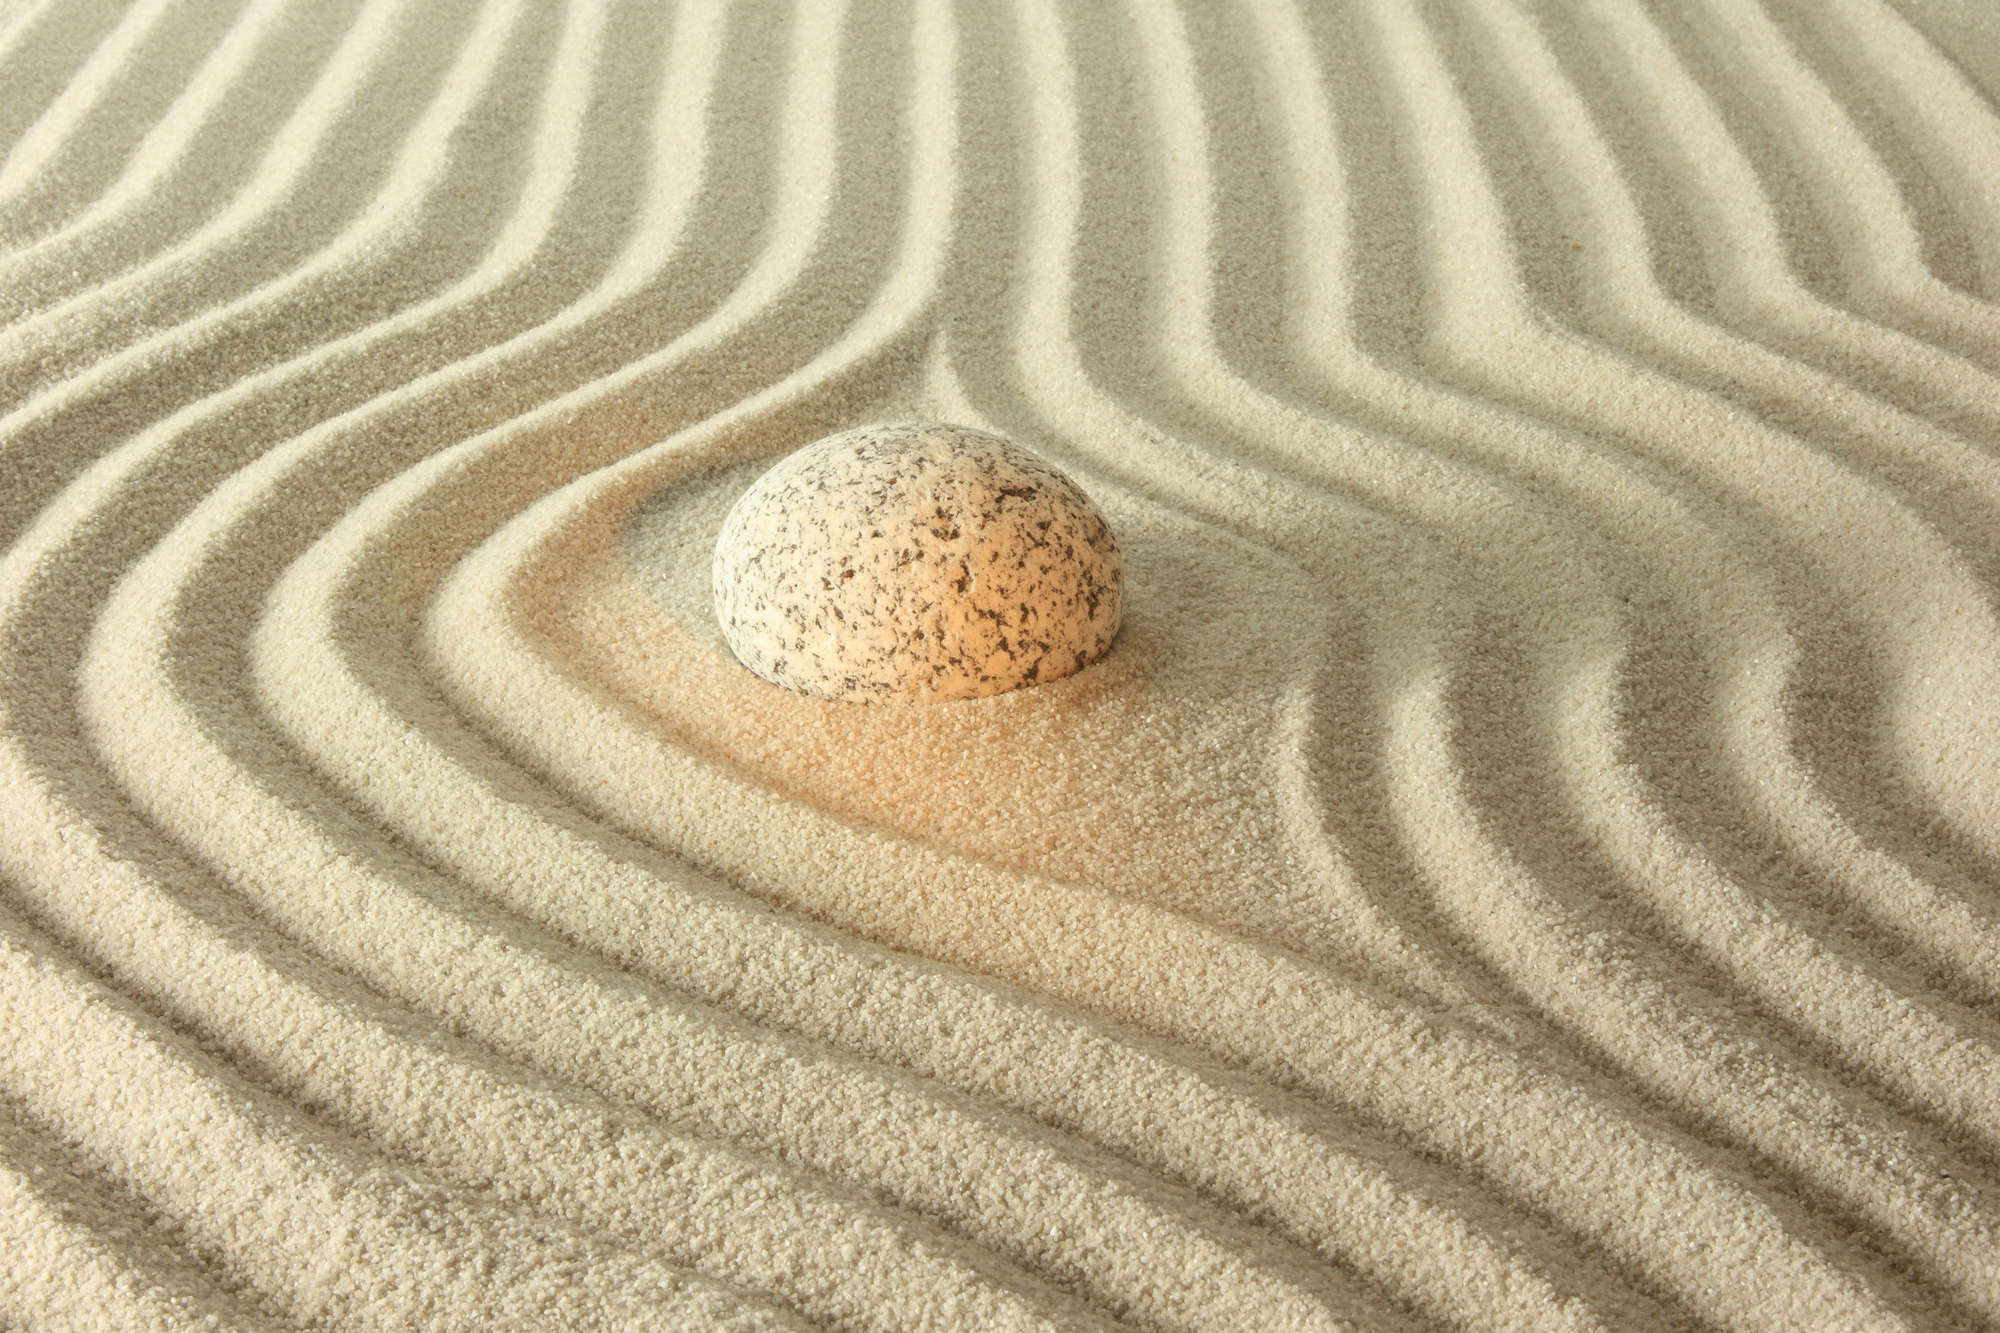             Spa Fototapete gelber Stein in geriffeltem Sand auf Premium Glattvlies
        